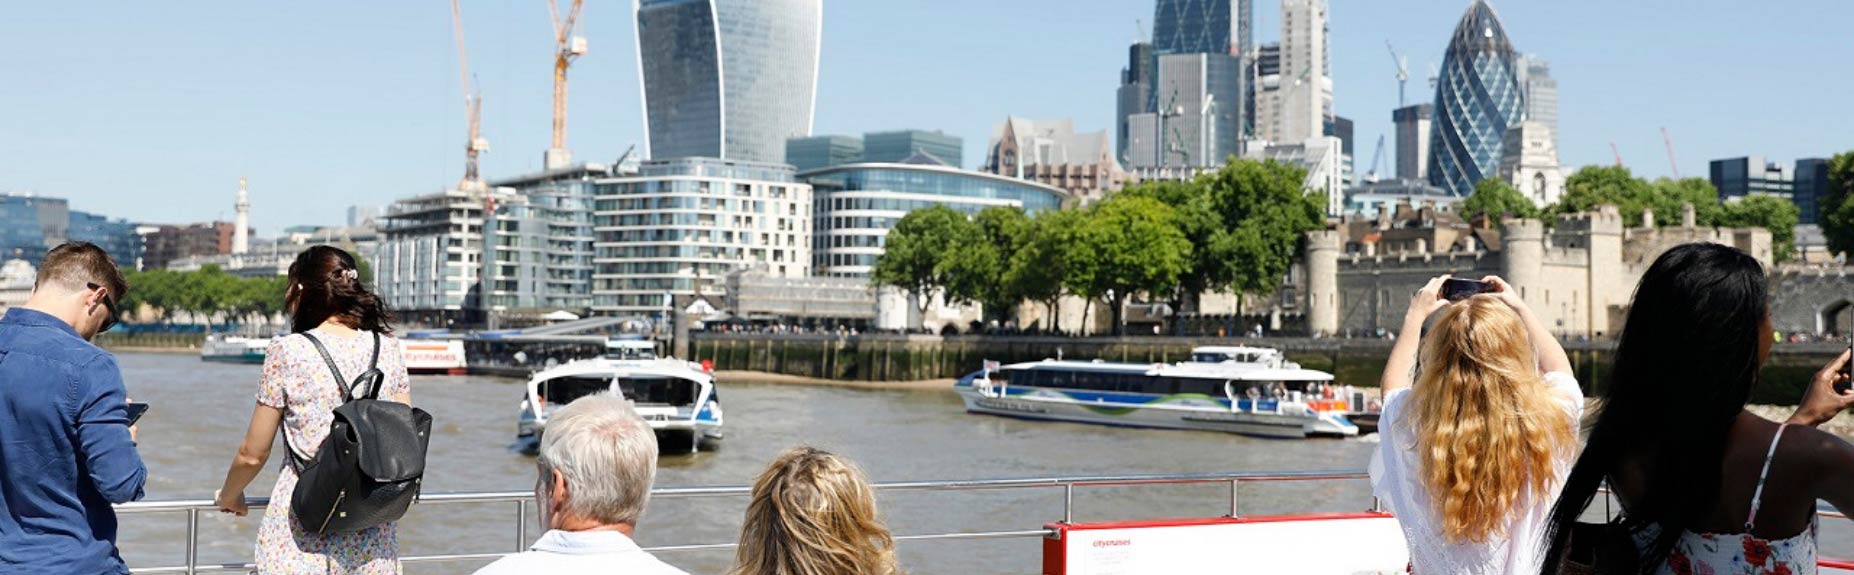 Menschen auf Bootsdeck Themse und London im Hintergrund